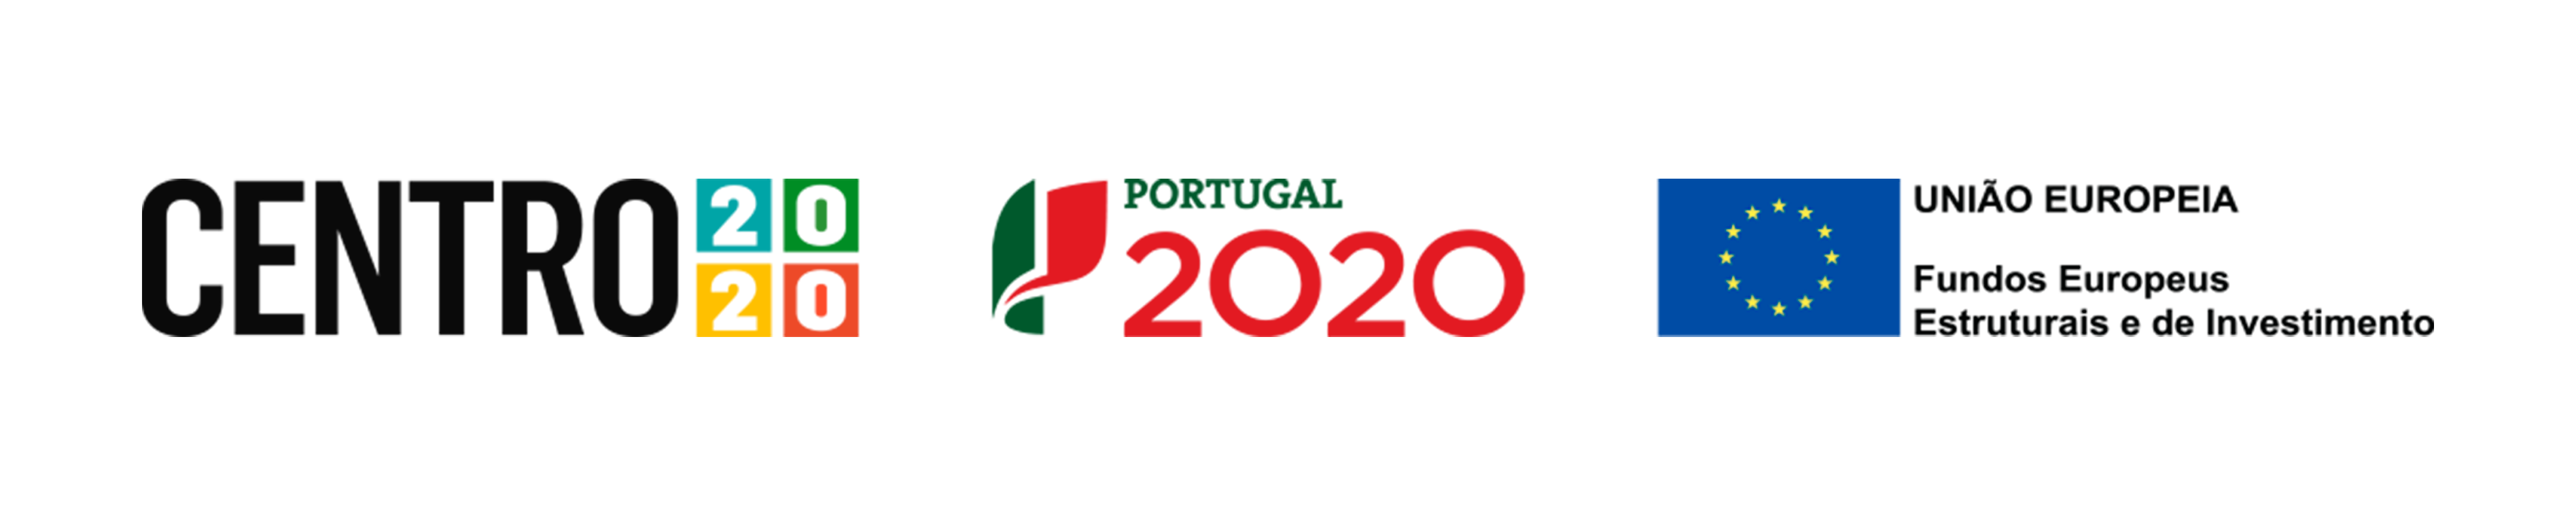 apoio_portugal_2020